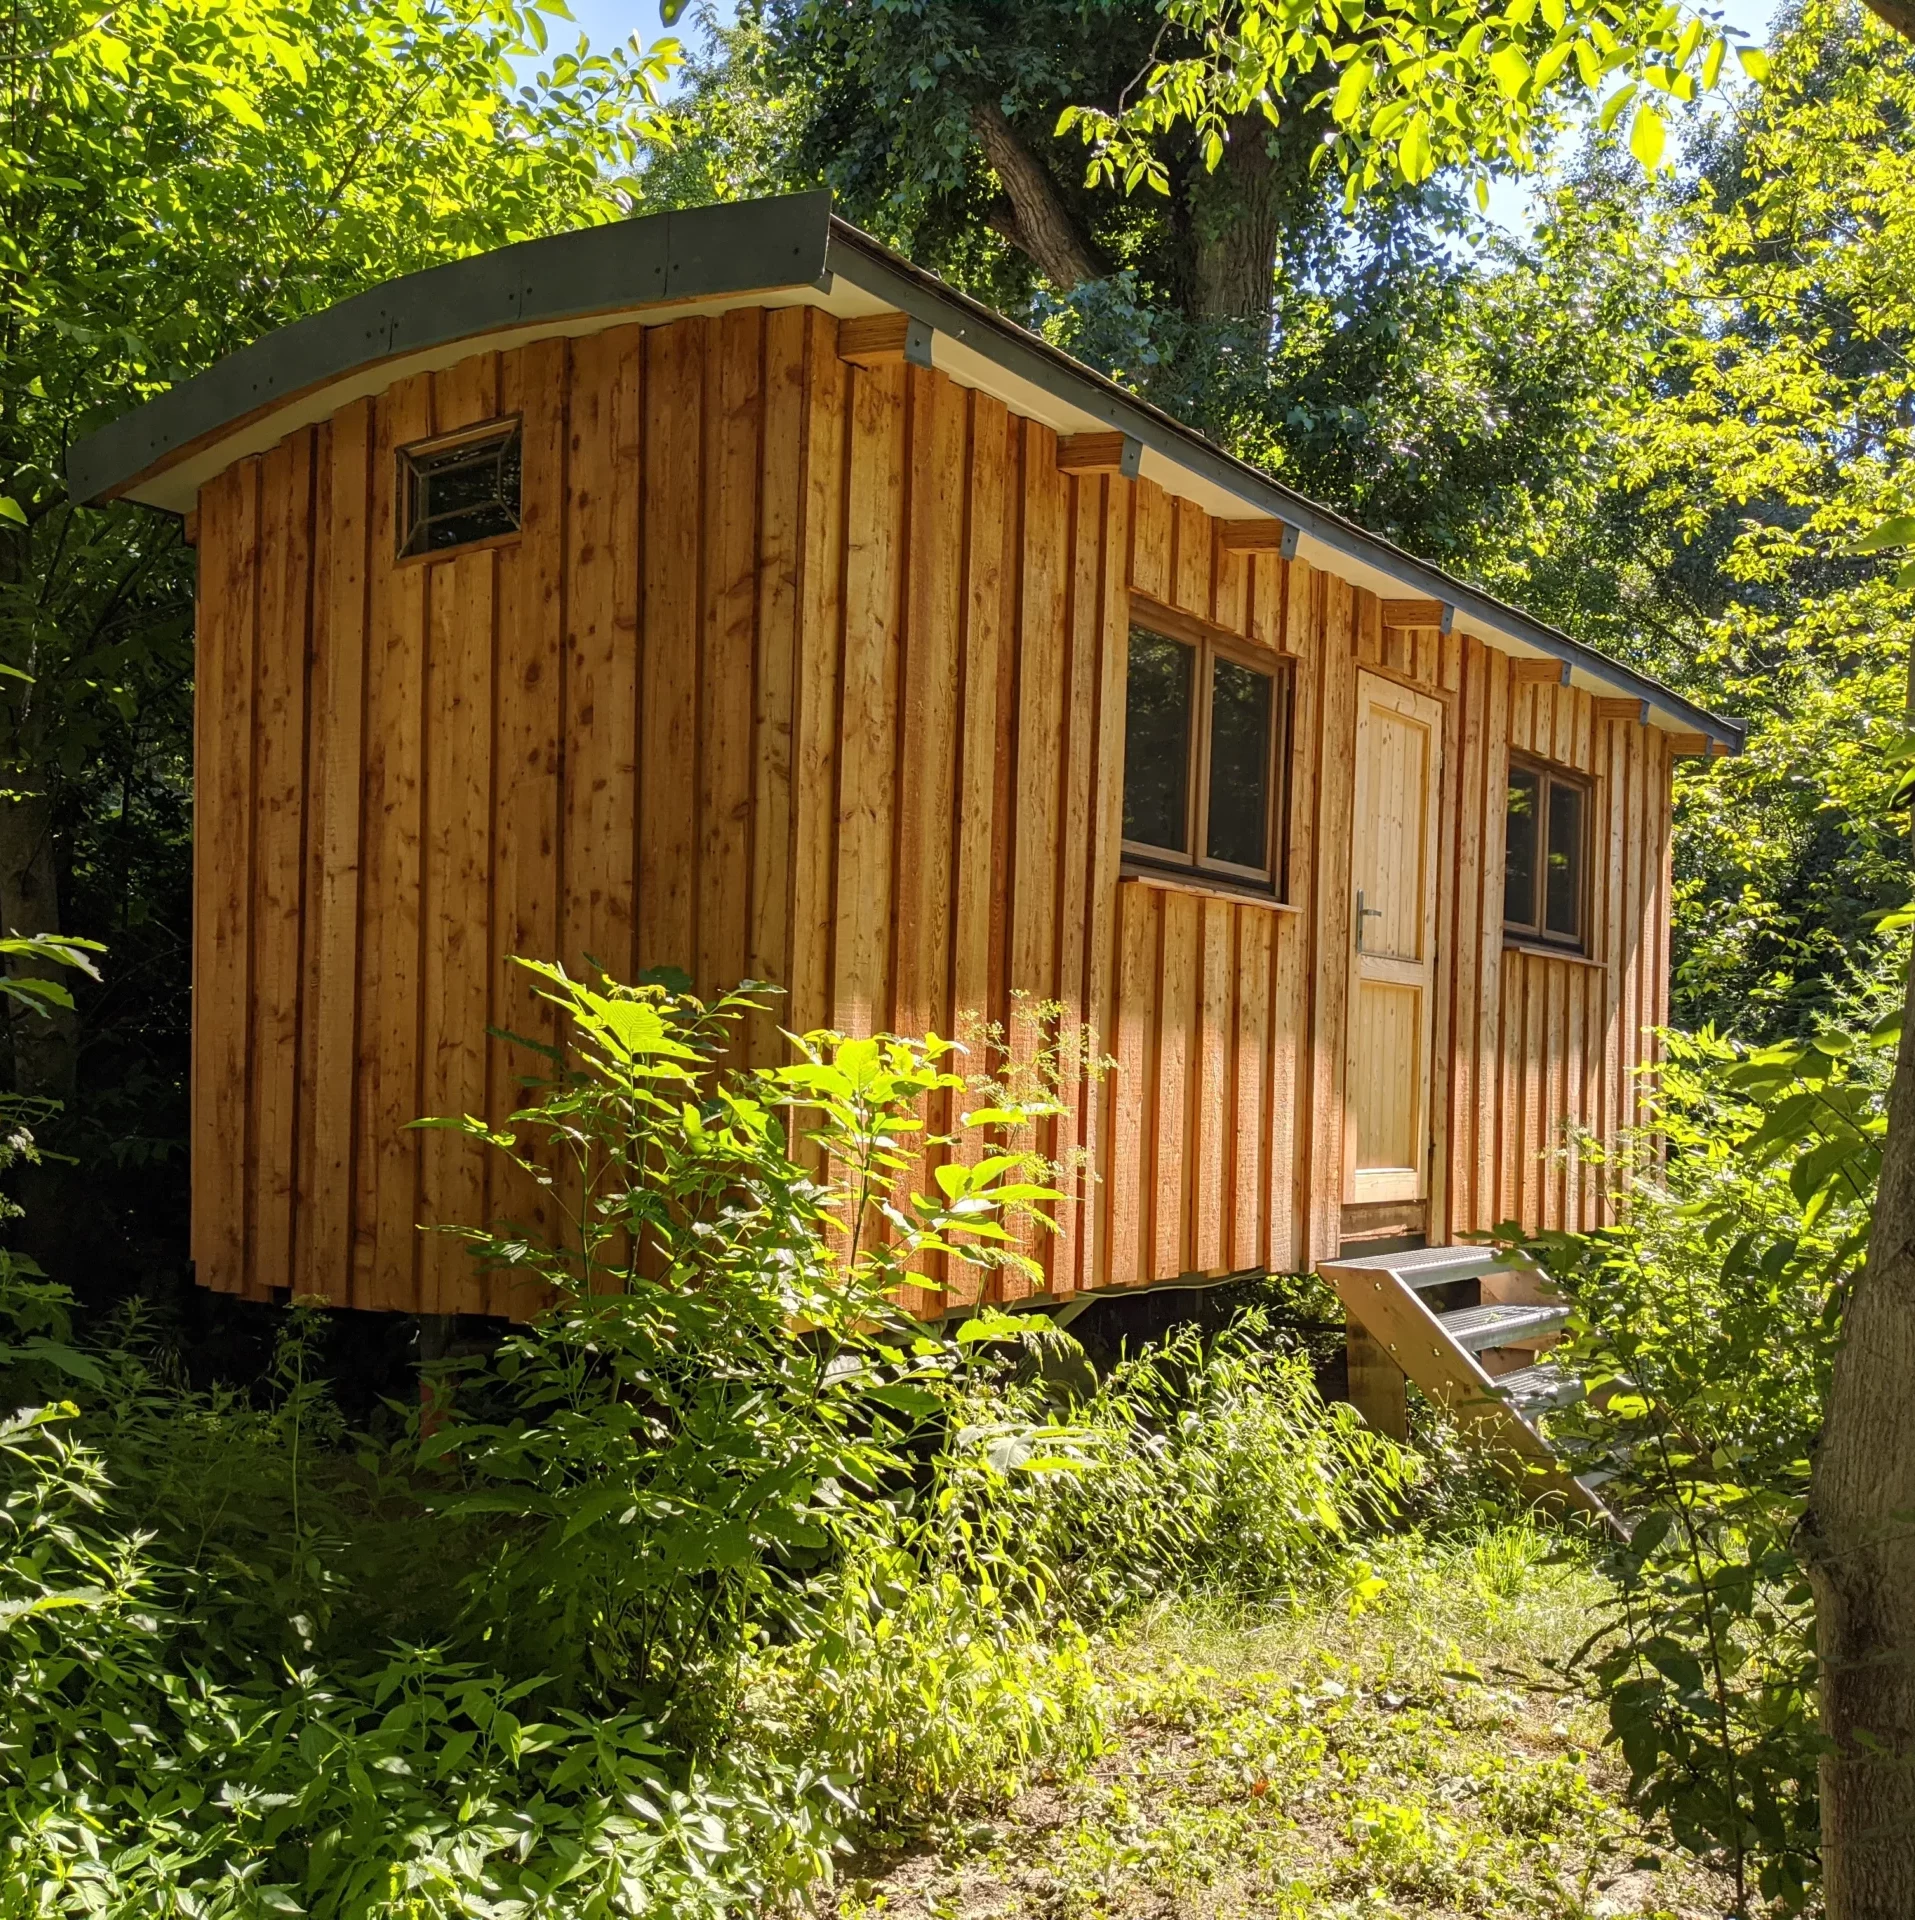 ecovillage_hainburg-treehouse-tiny_home_hammocks (14)